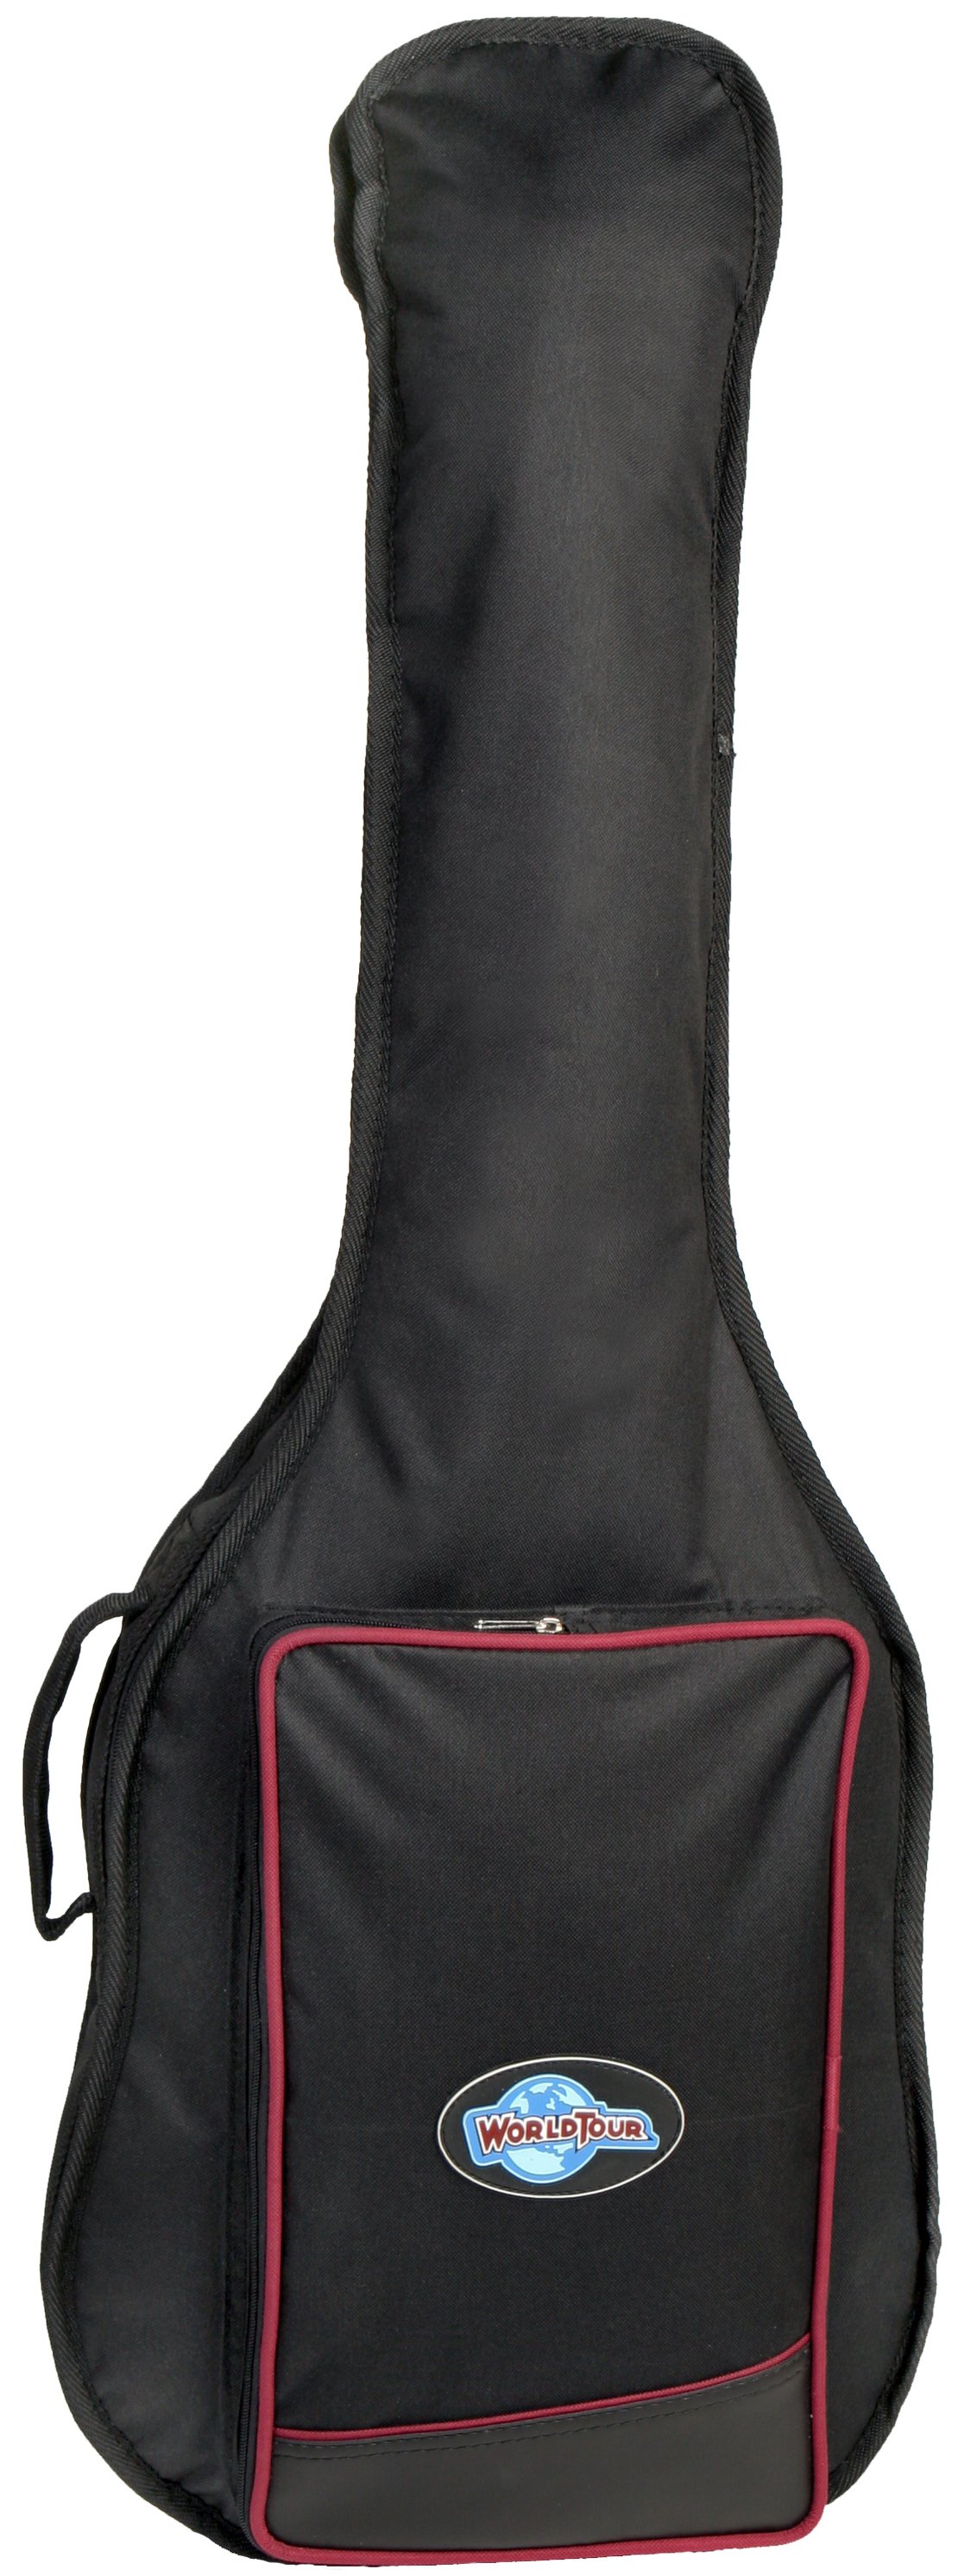 Acoustic Guitar Bags